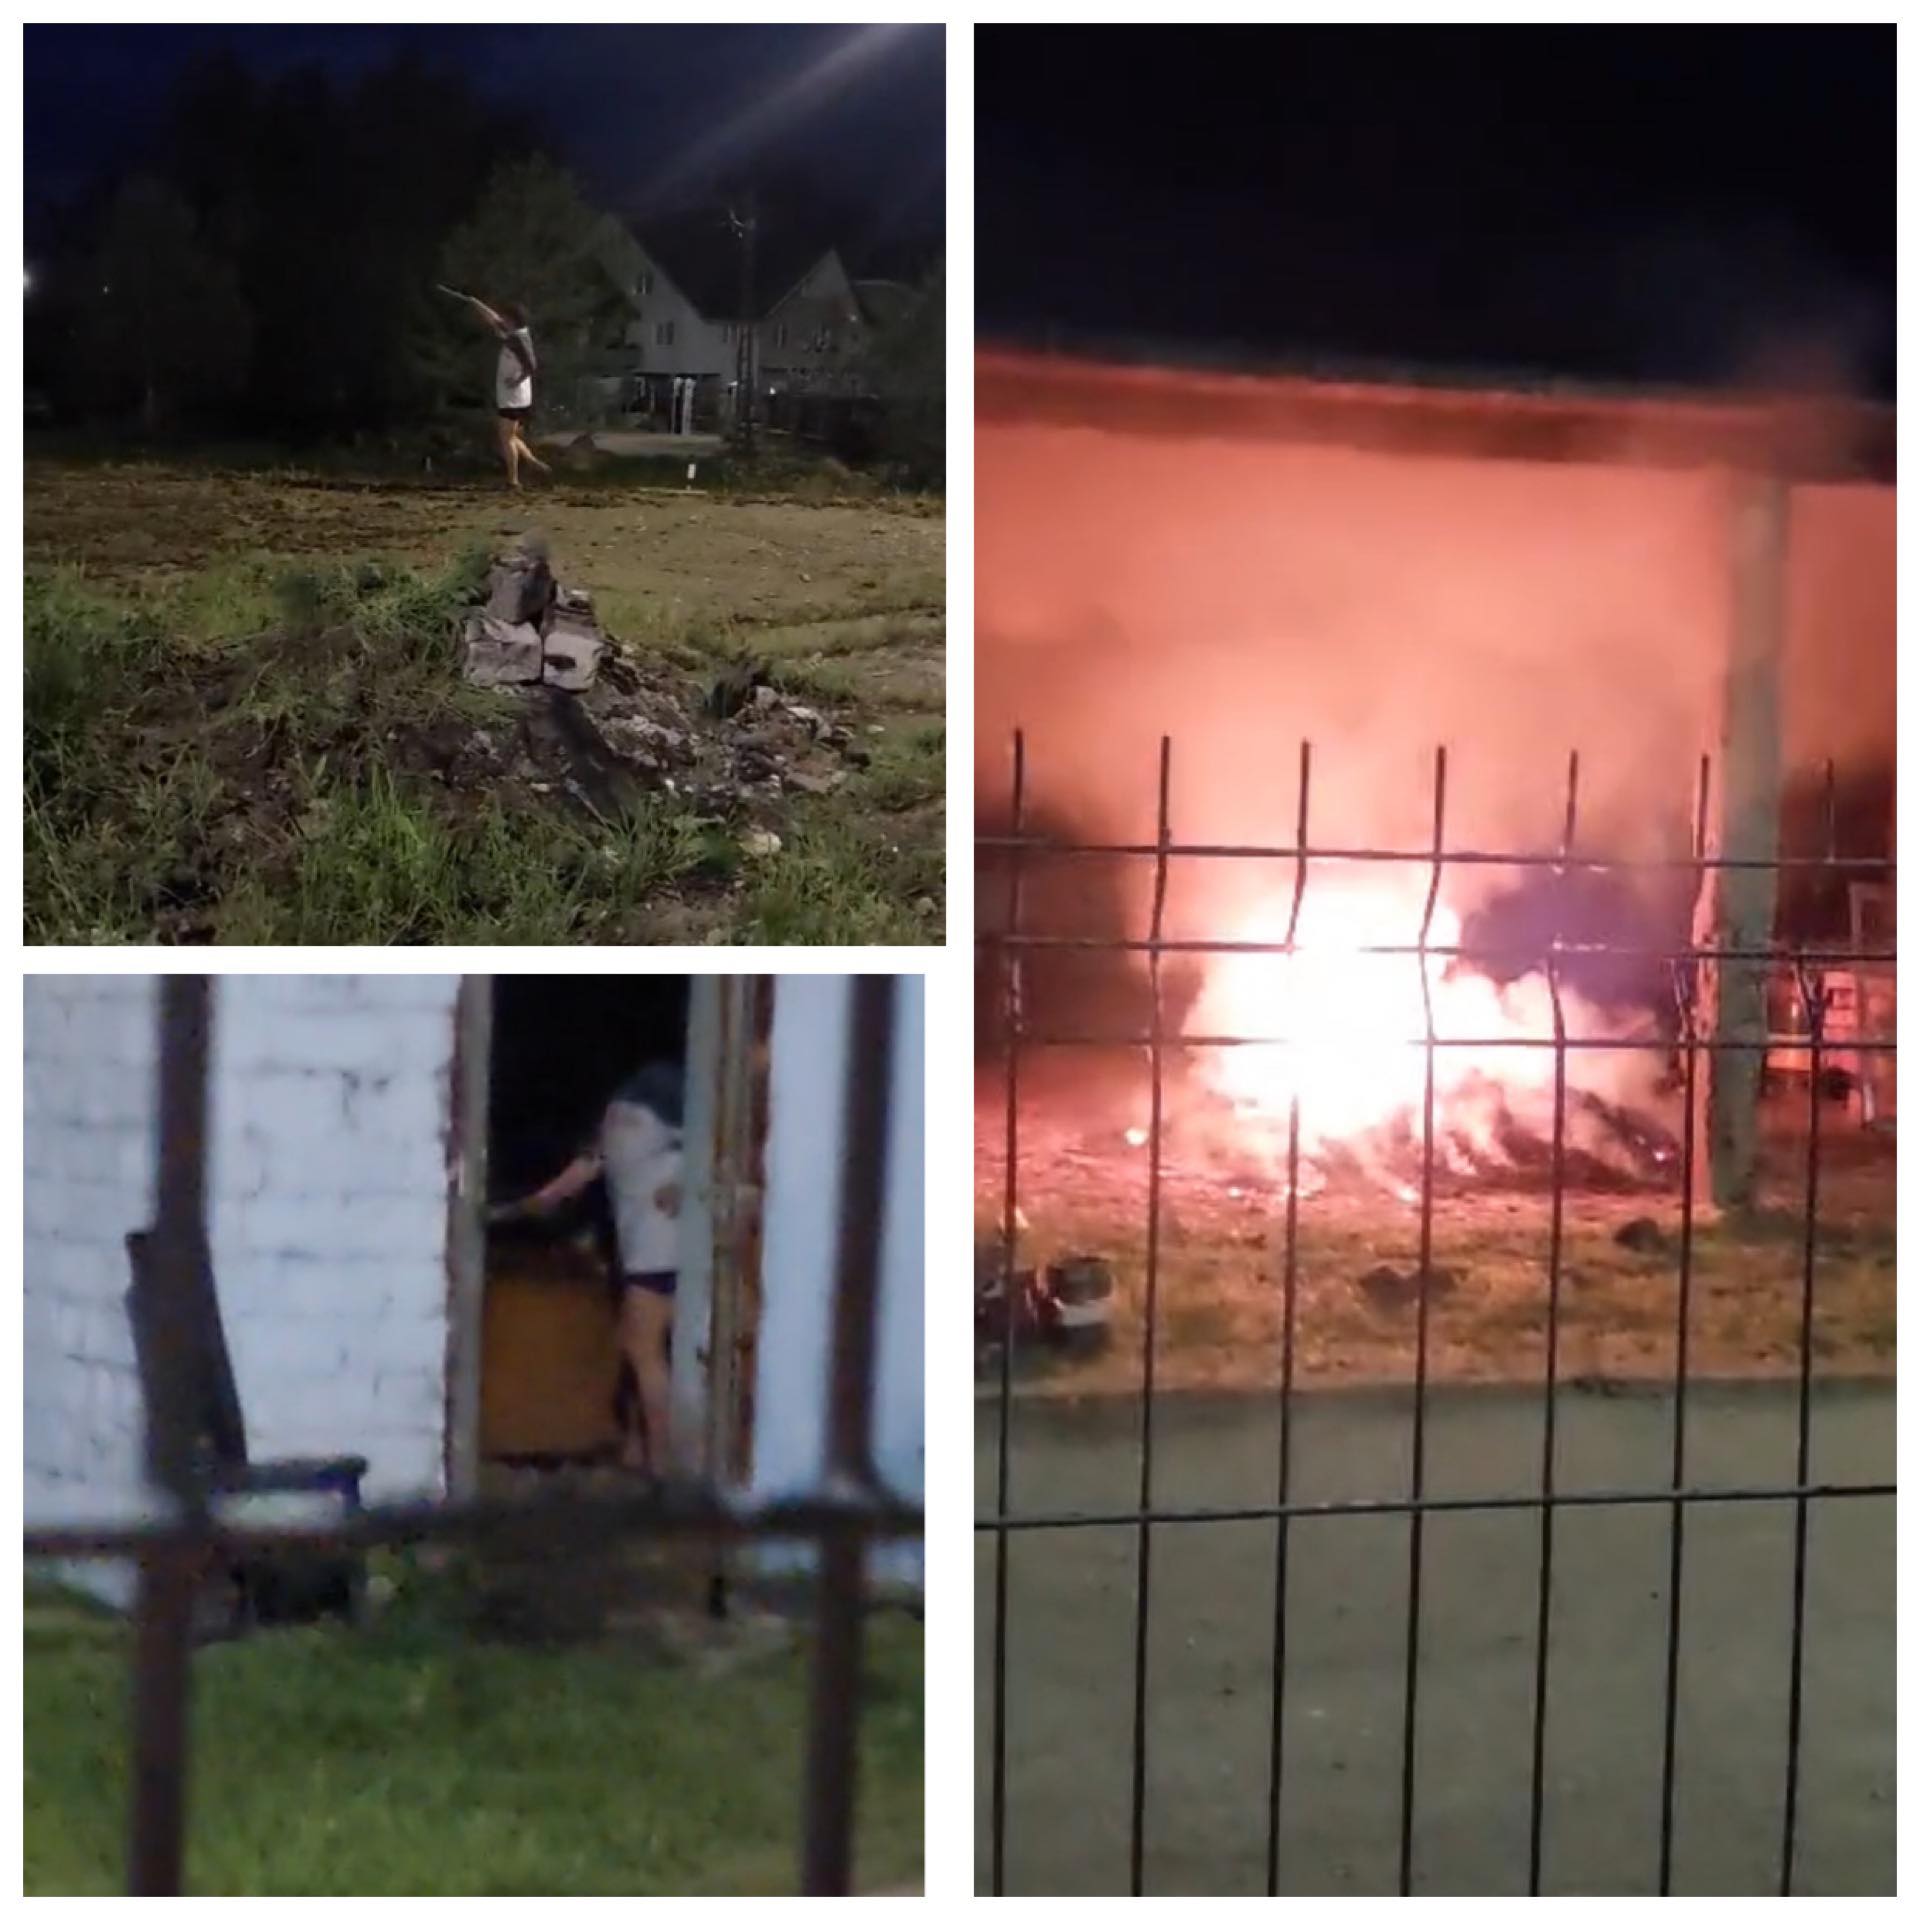 EXCLUSIV VIDEO: DUPĂ UN SCANDAL – O femeie din Cicîrlău a aruncat benzină în curte și a dat foc